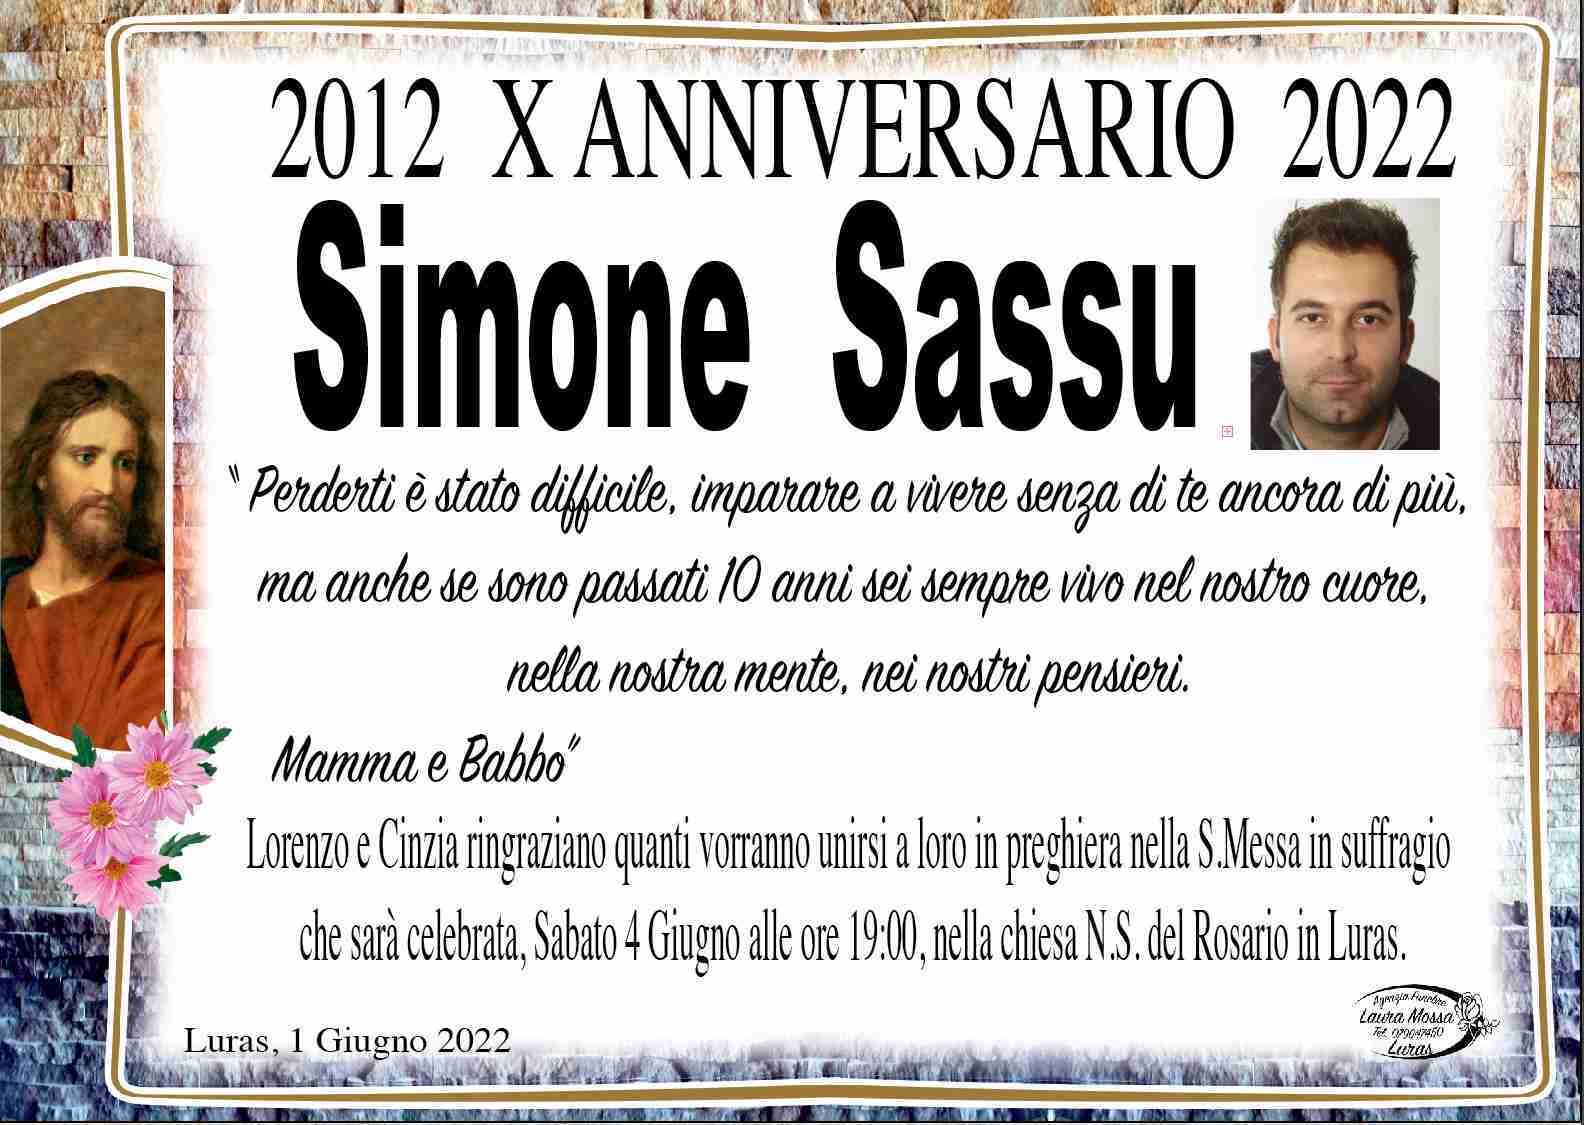 Simone Sassu